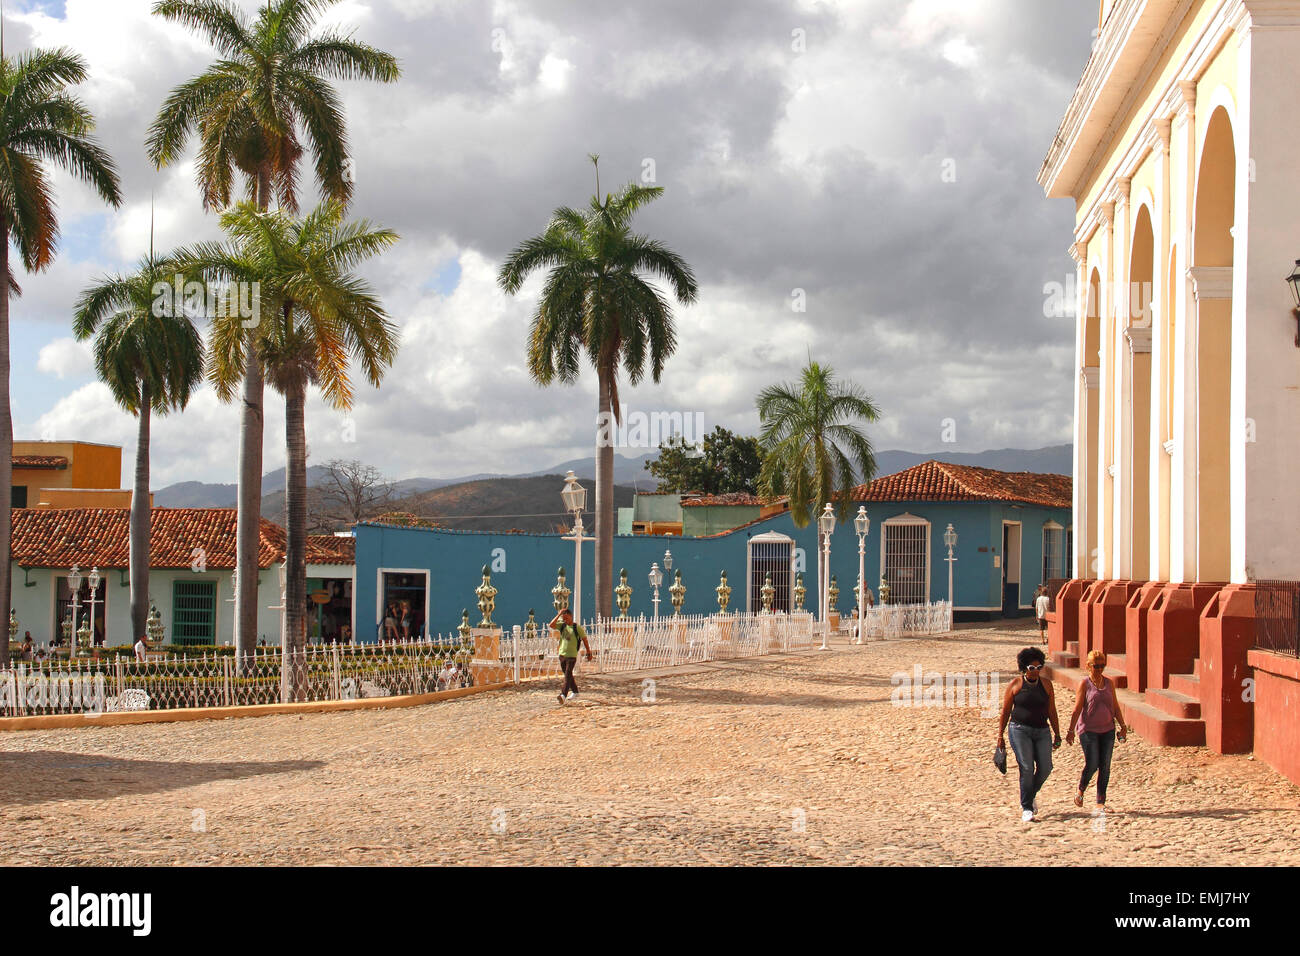 Brunet Palace on the Plaza Mayor Trinidad Cuba Stock Photo